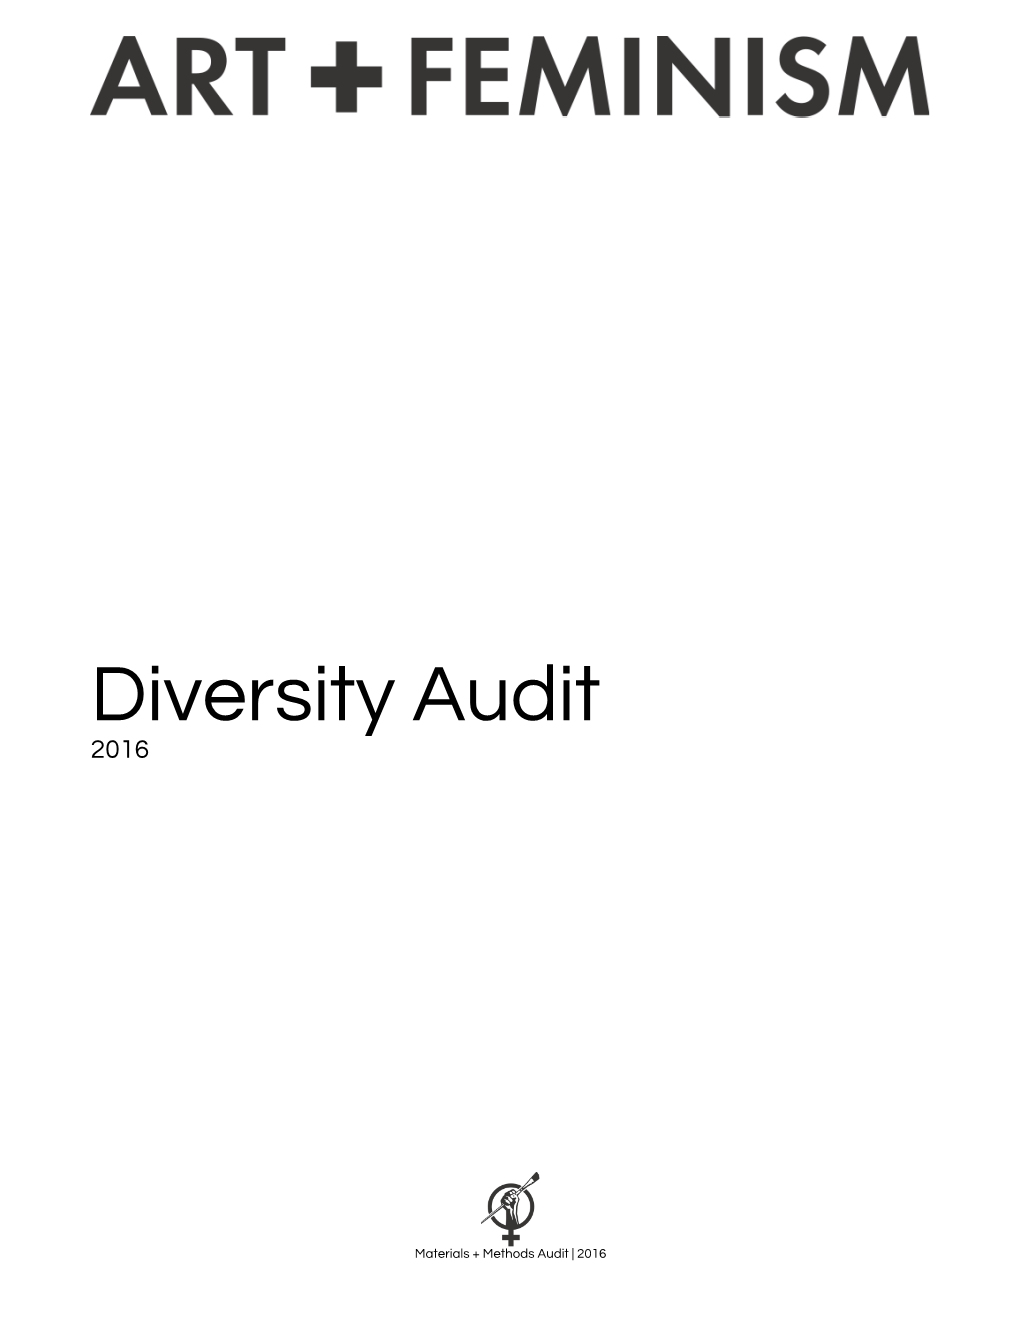 Diversity Audit 2016